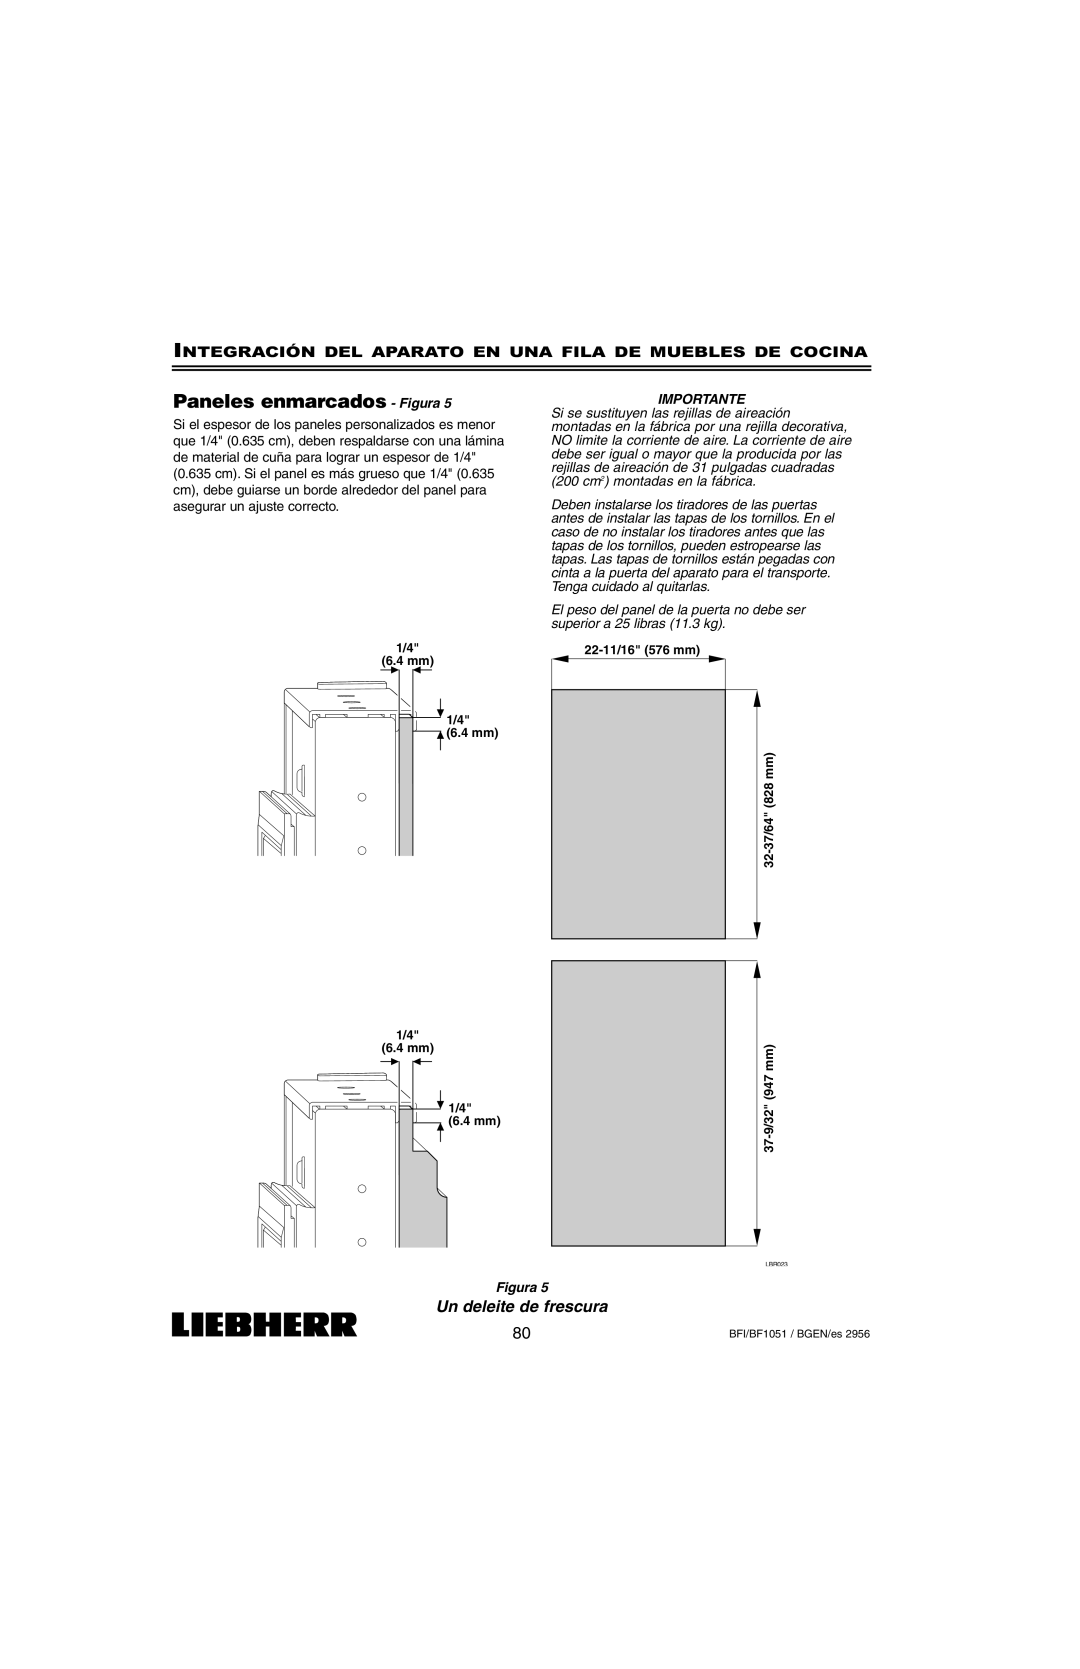 Liebherr BFI1051 Paneles enmarcados - Figura, Un deleite de frescura, Importante, 6.4 mm, 22-11/16576 mm 32-37/64828 mm 